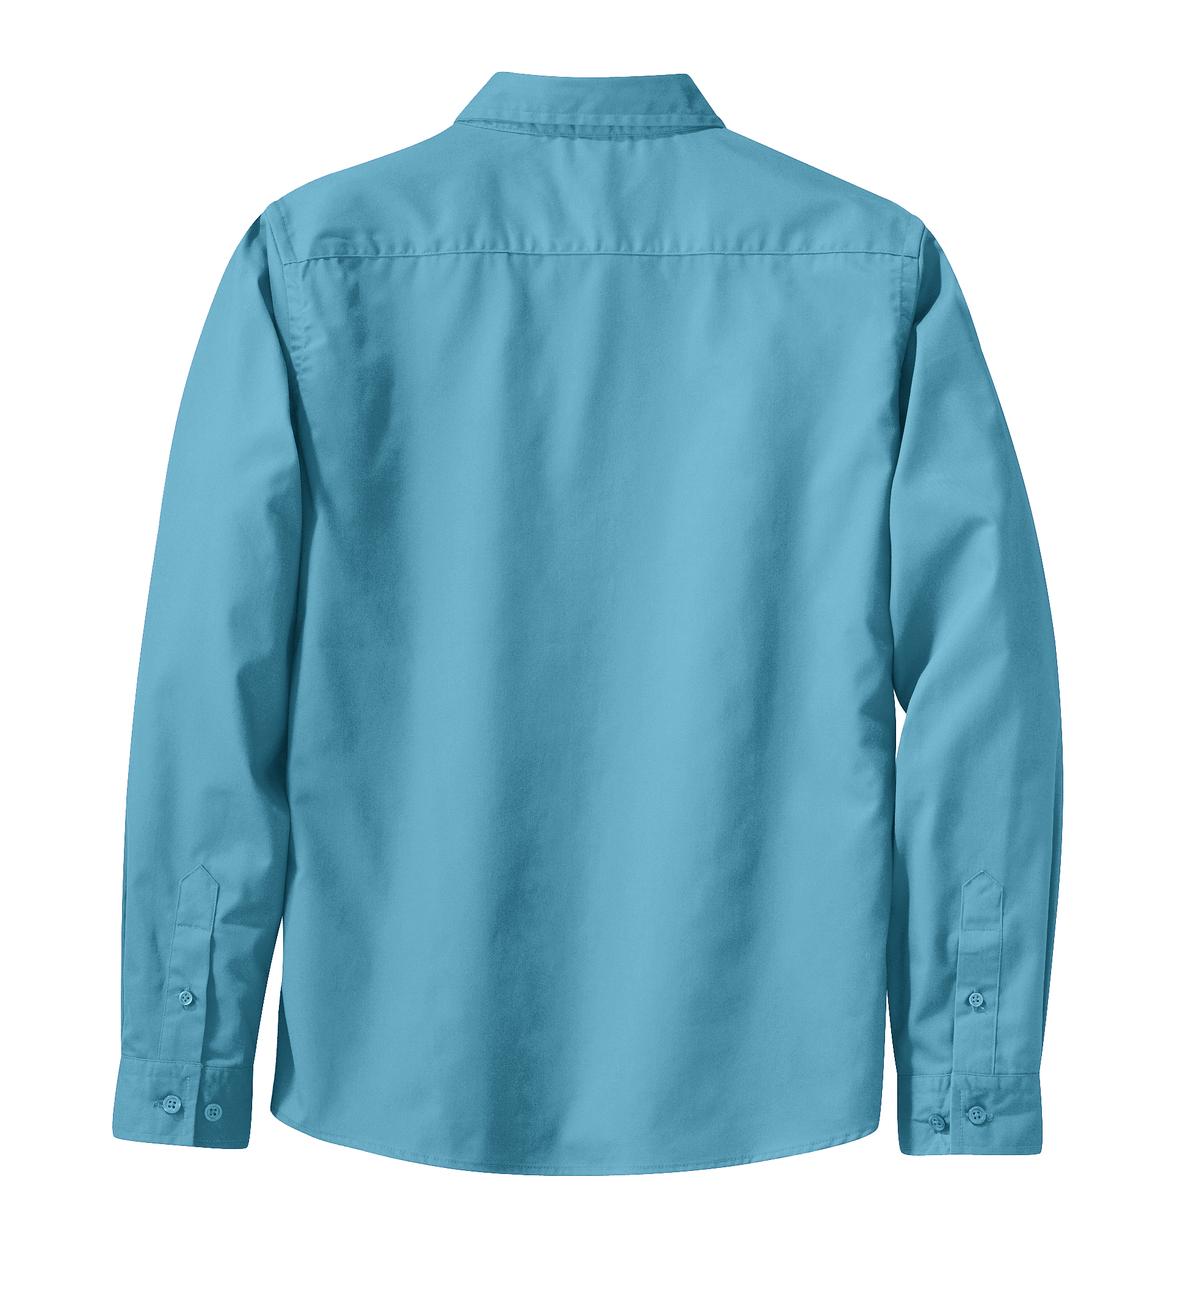 Mafoose Women's Long Sleeve Easy Care Shirt Maui Blue-Back